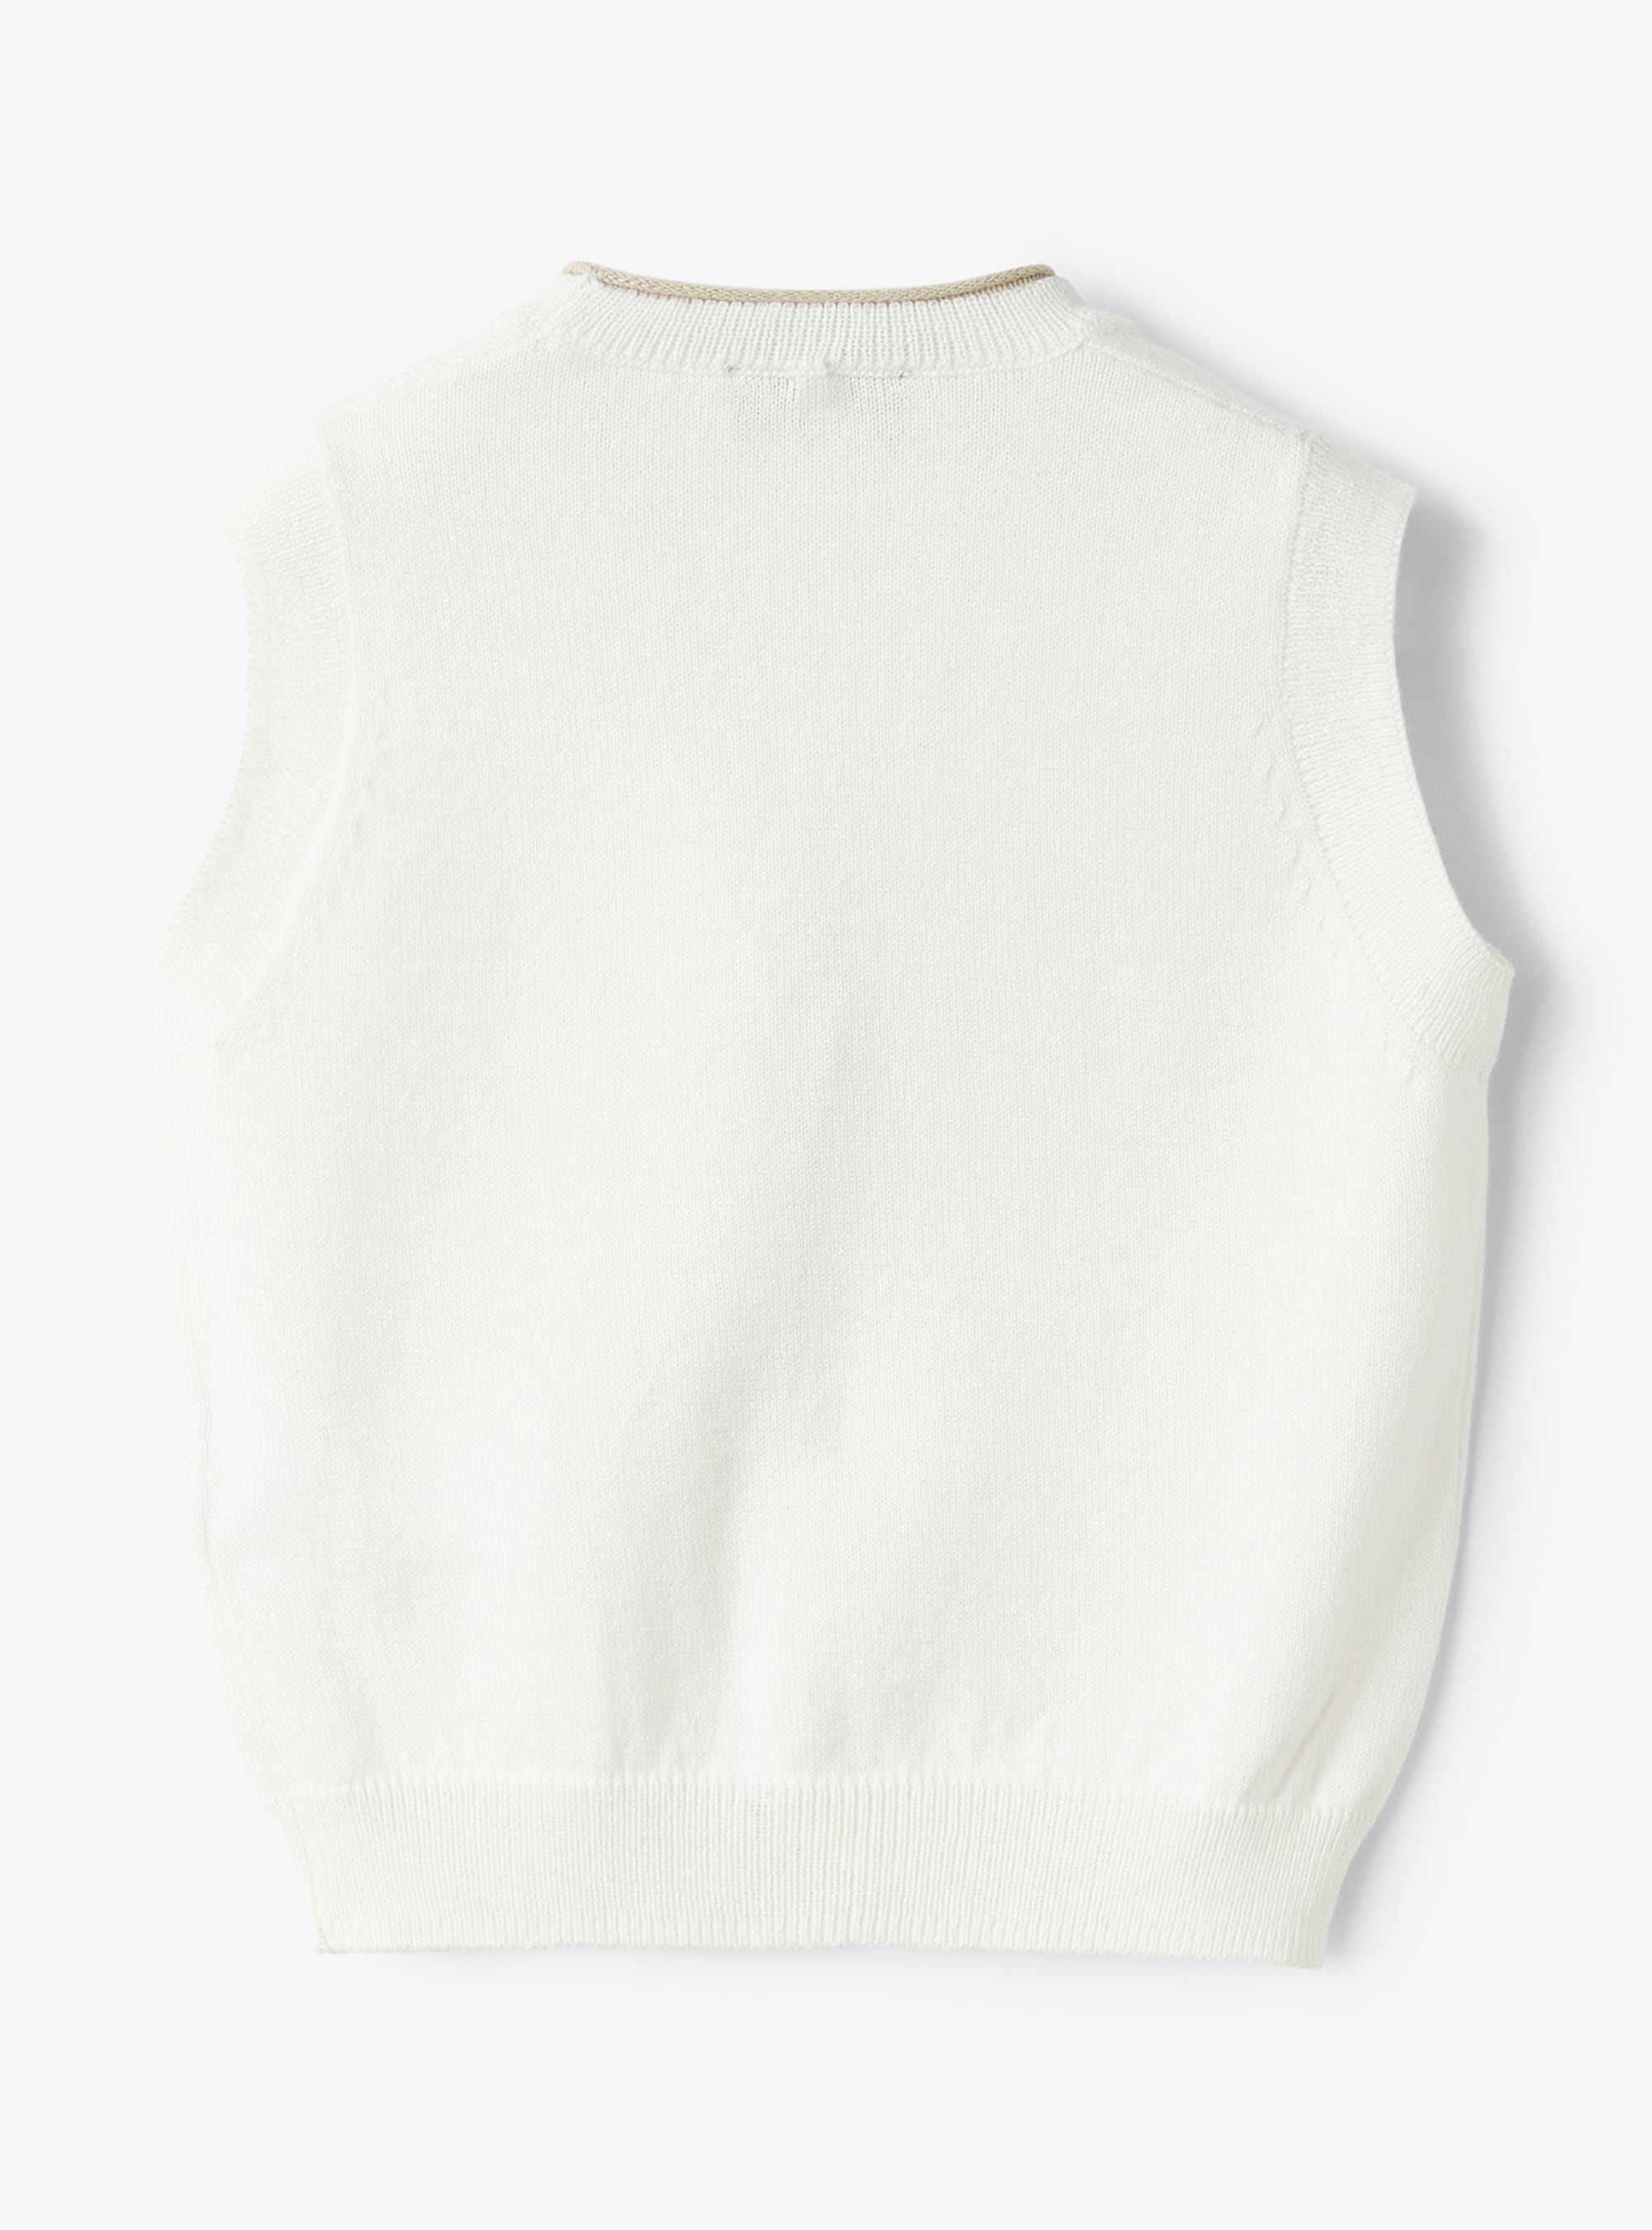 Gilet tricot in cotone organico con profilo a contrasto - Bianco | Il Gufo